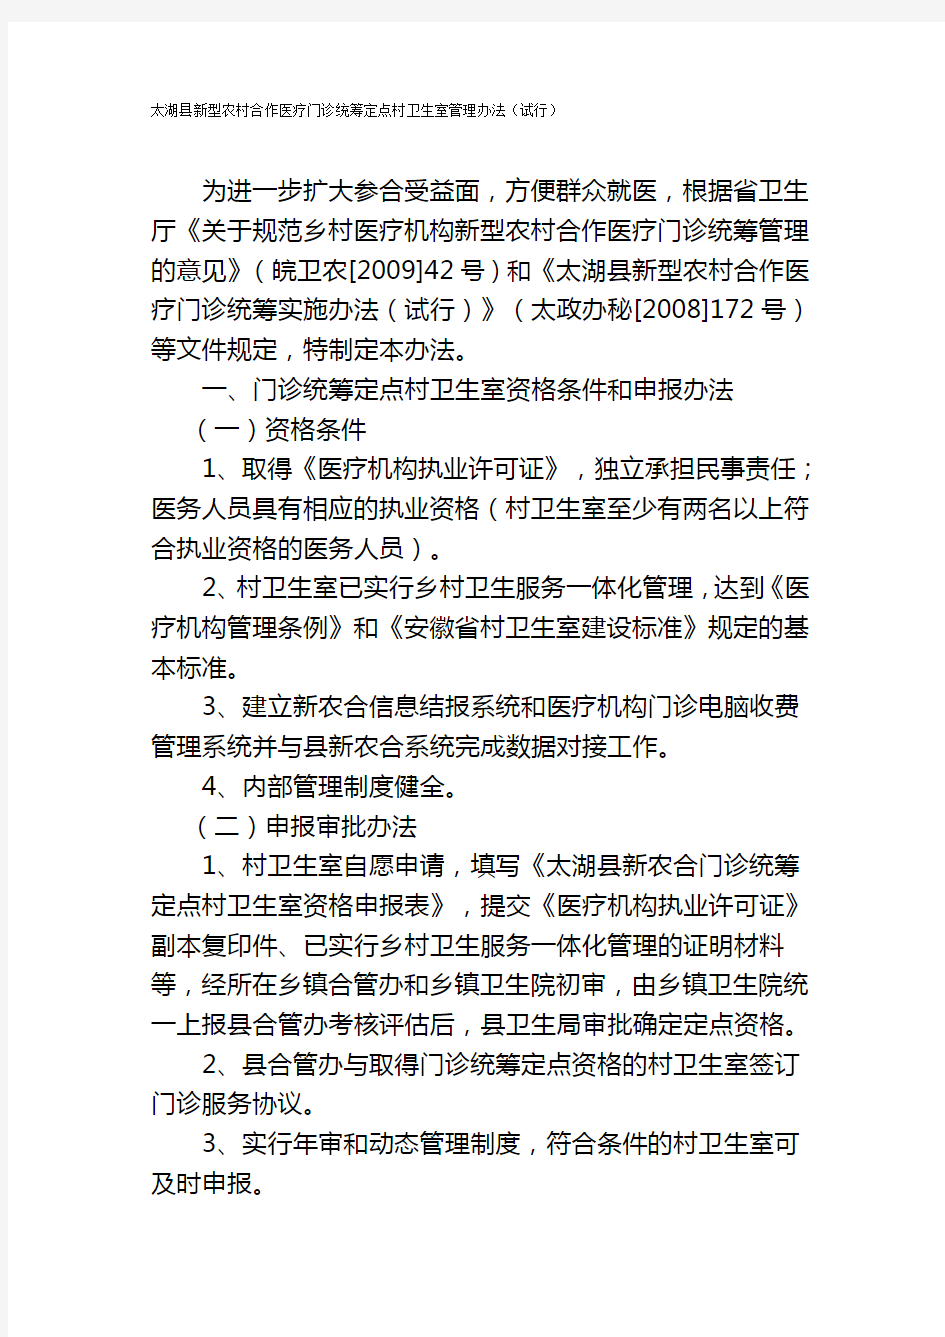 太湖县新型农村合作医疗门诊统筹定点村卫生室管理办法